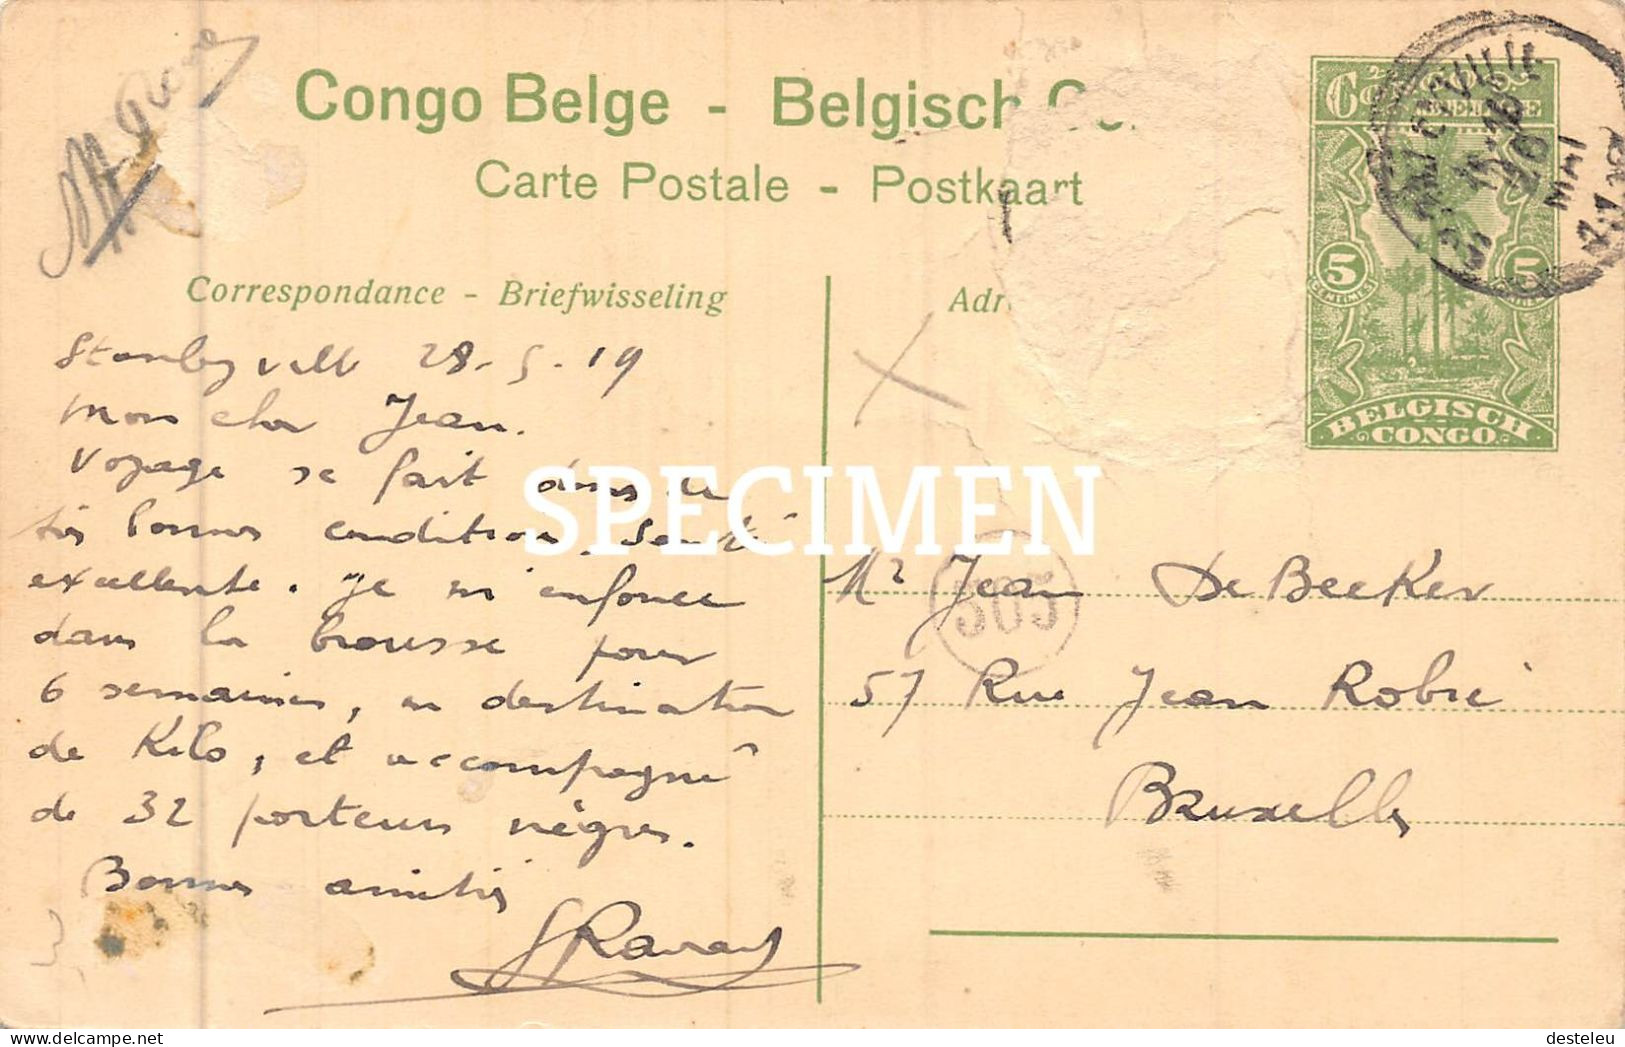 Katanga - Nègres Nivelant Une Termitière  -  Congo Belge - 5 Centimes Stamp - Autres & Non Classés